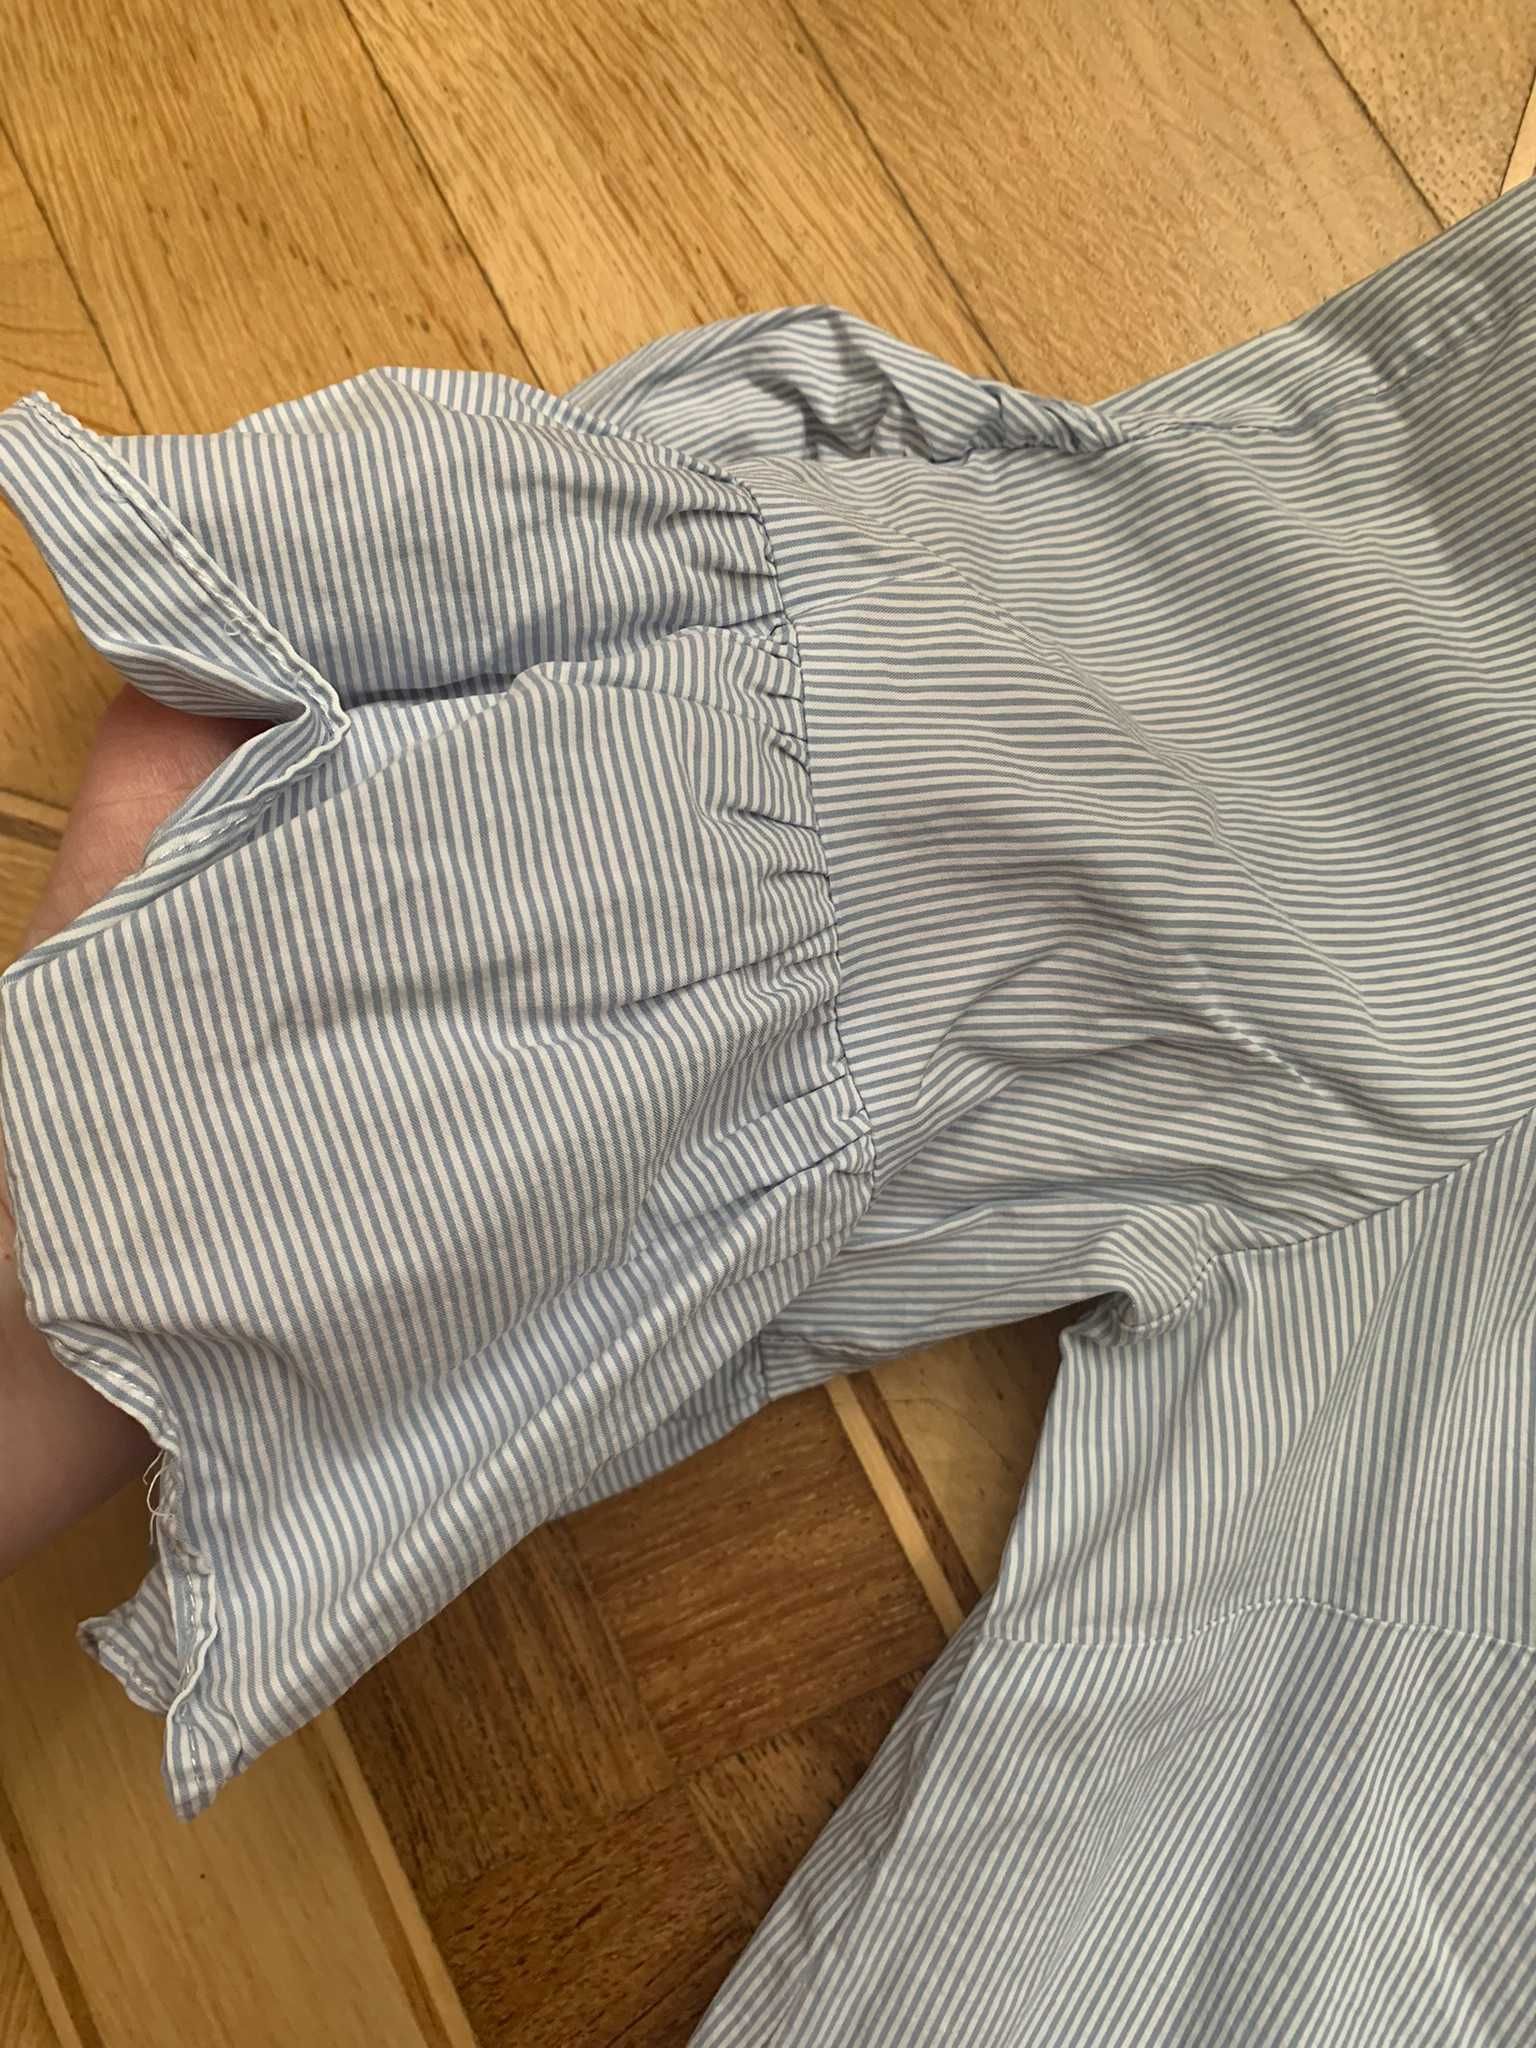 mango голубая блузка в мелкую полоску короткая размер M-L